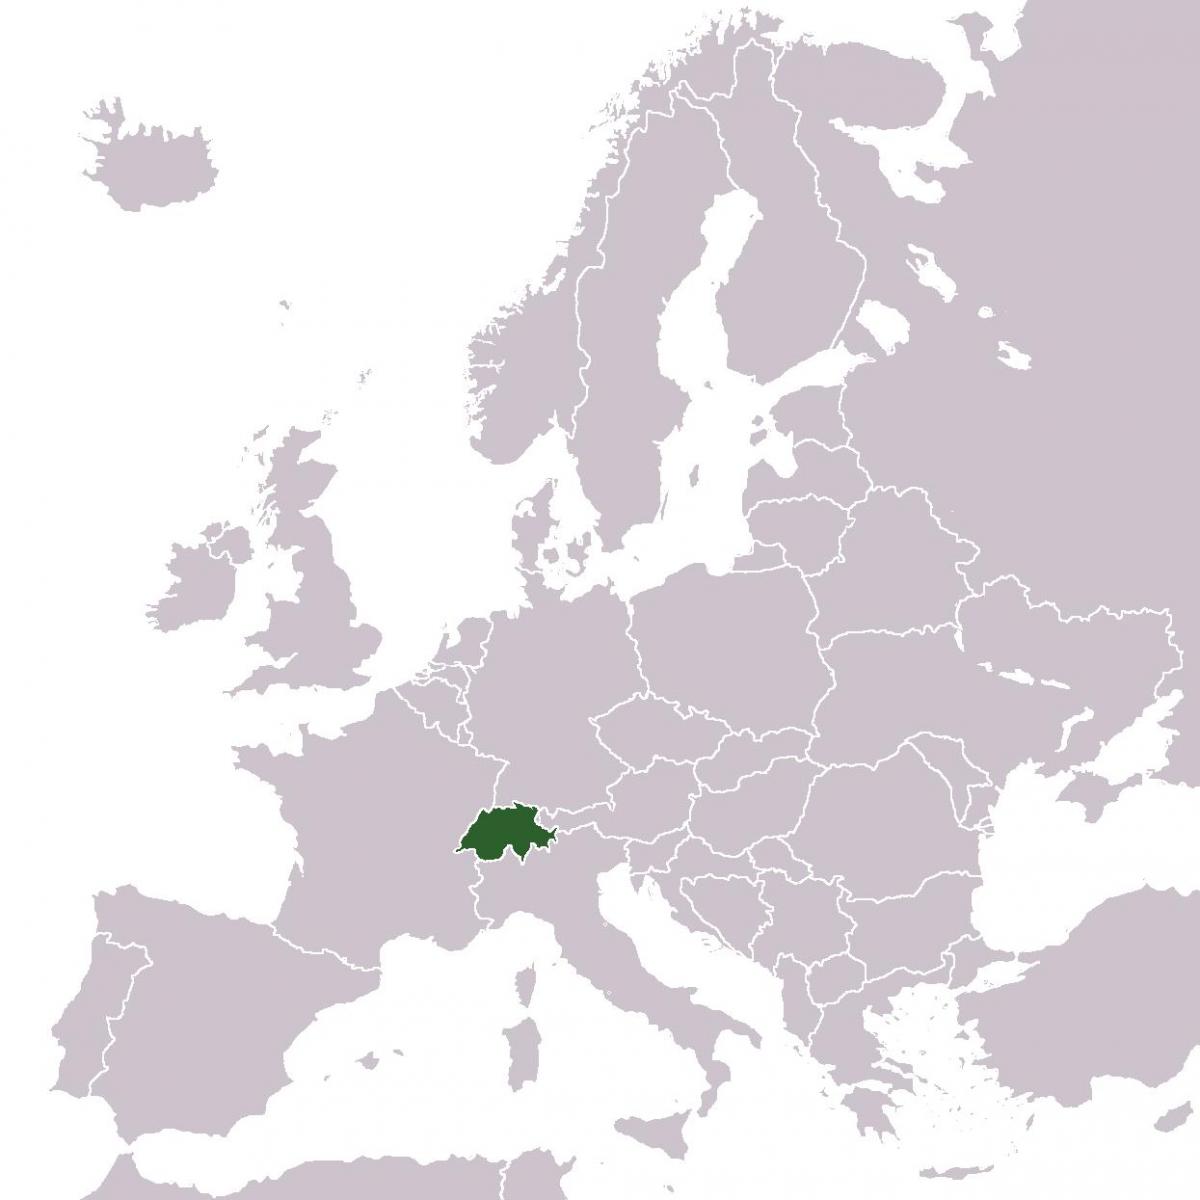 šveicarija vietą europos žemėlapyje